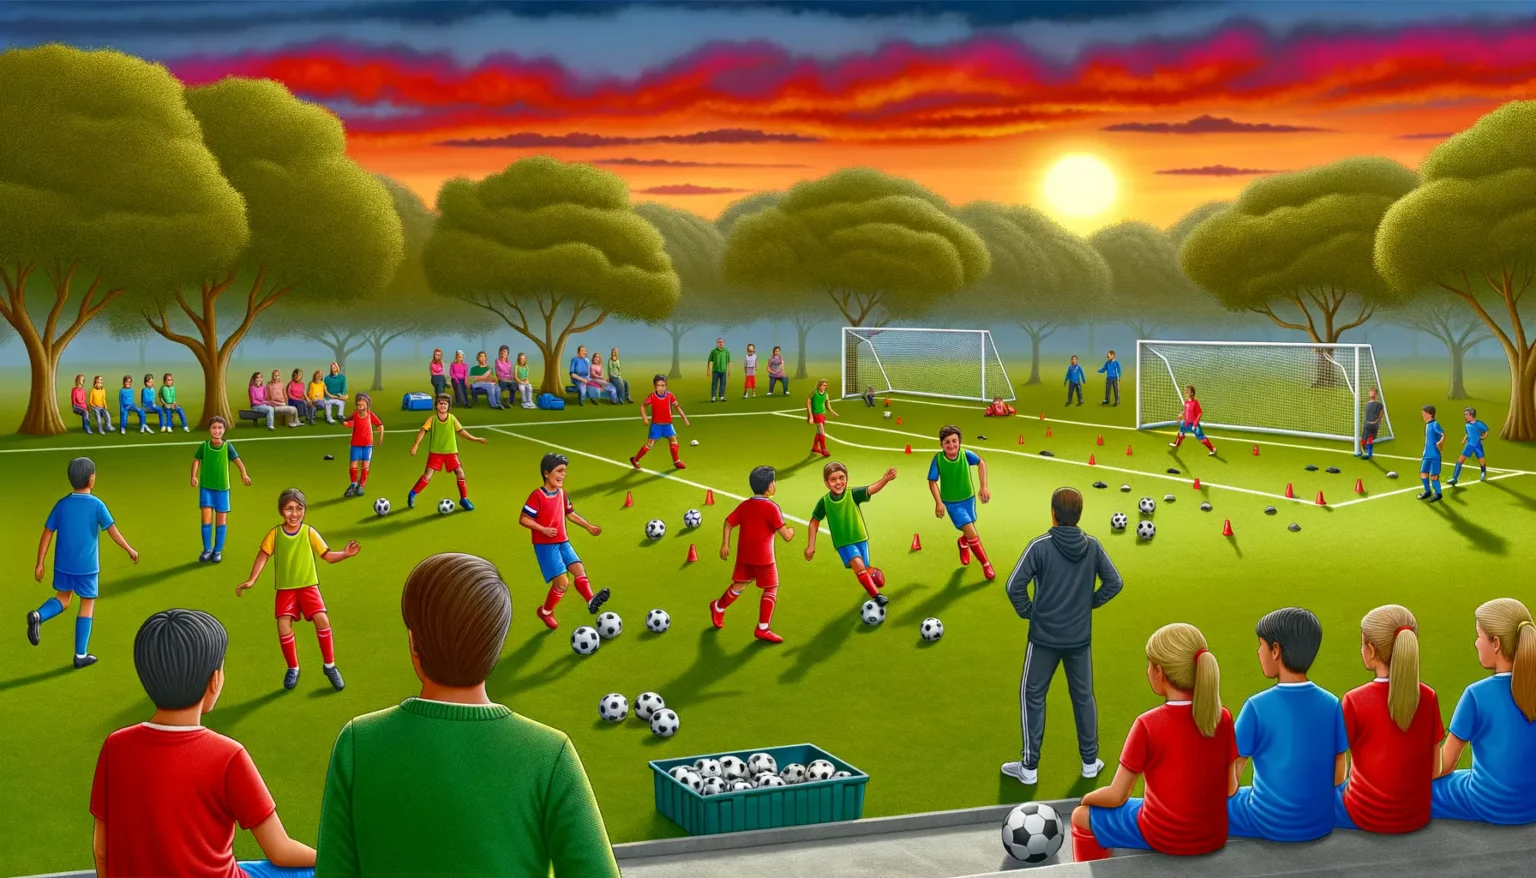 Eine lebhafte Fußballtrainings-Szene auf einem Feld bei Sonnenuntergang mit Kindern in verschiedenen farbigen Trikots, die Übungen durchführen. Im Vordergrund betrachten Trainer und sitzende Zuschauer das Geschehen. Im Hintergrund ein dramatisch rot gefärbter Himmel über Bäumen.